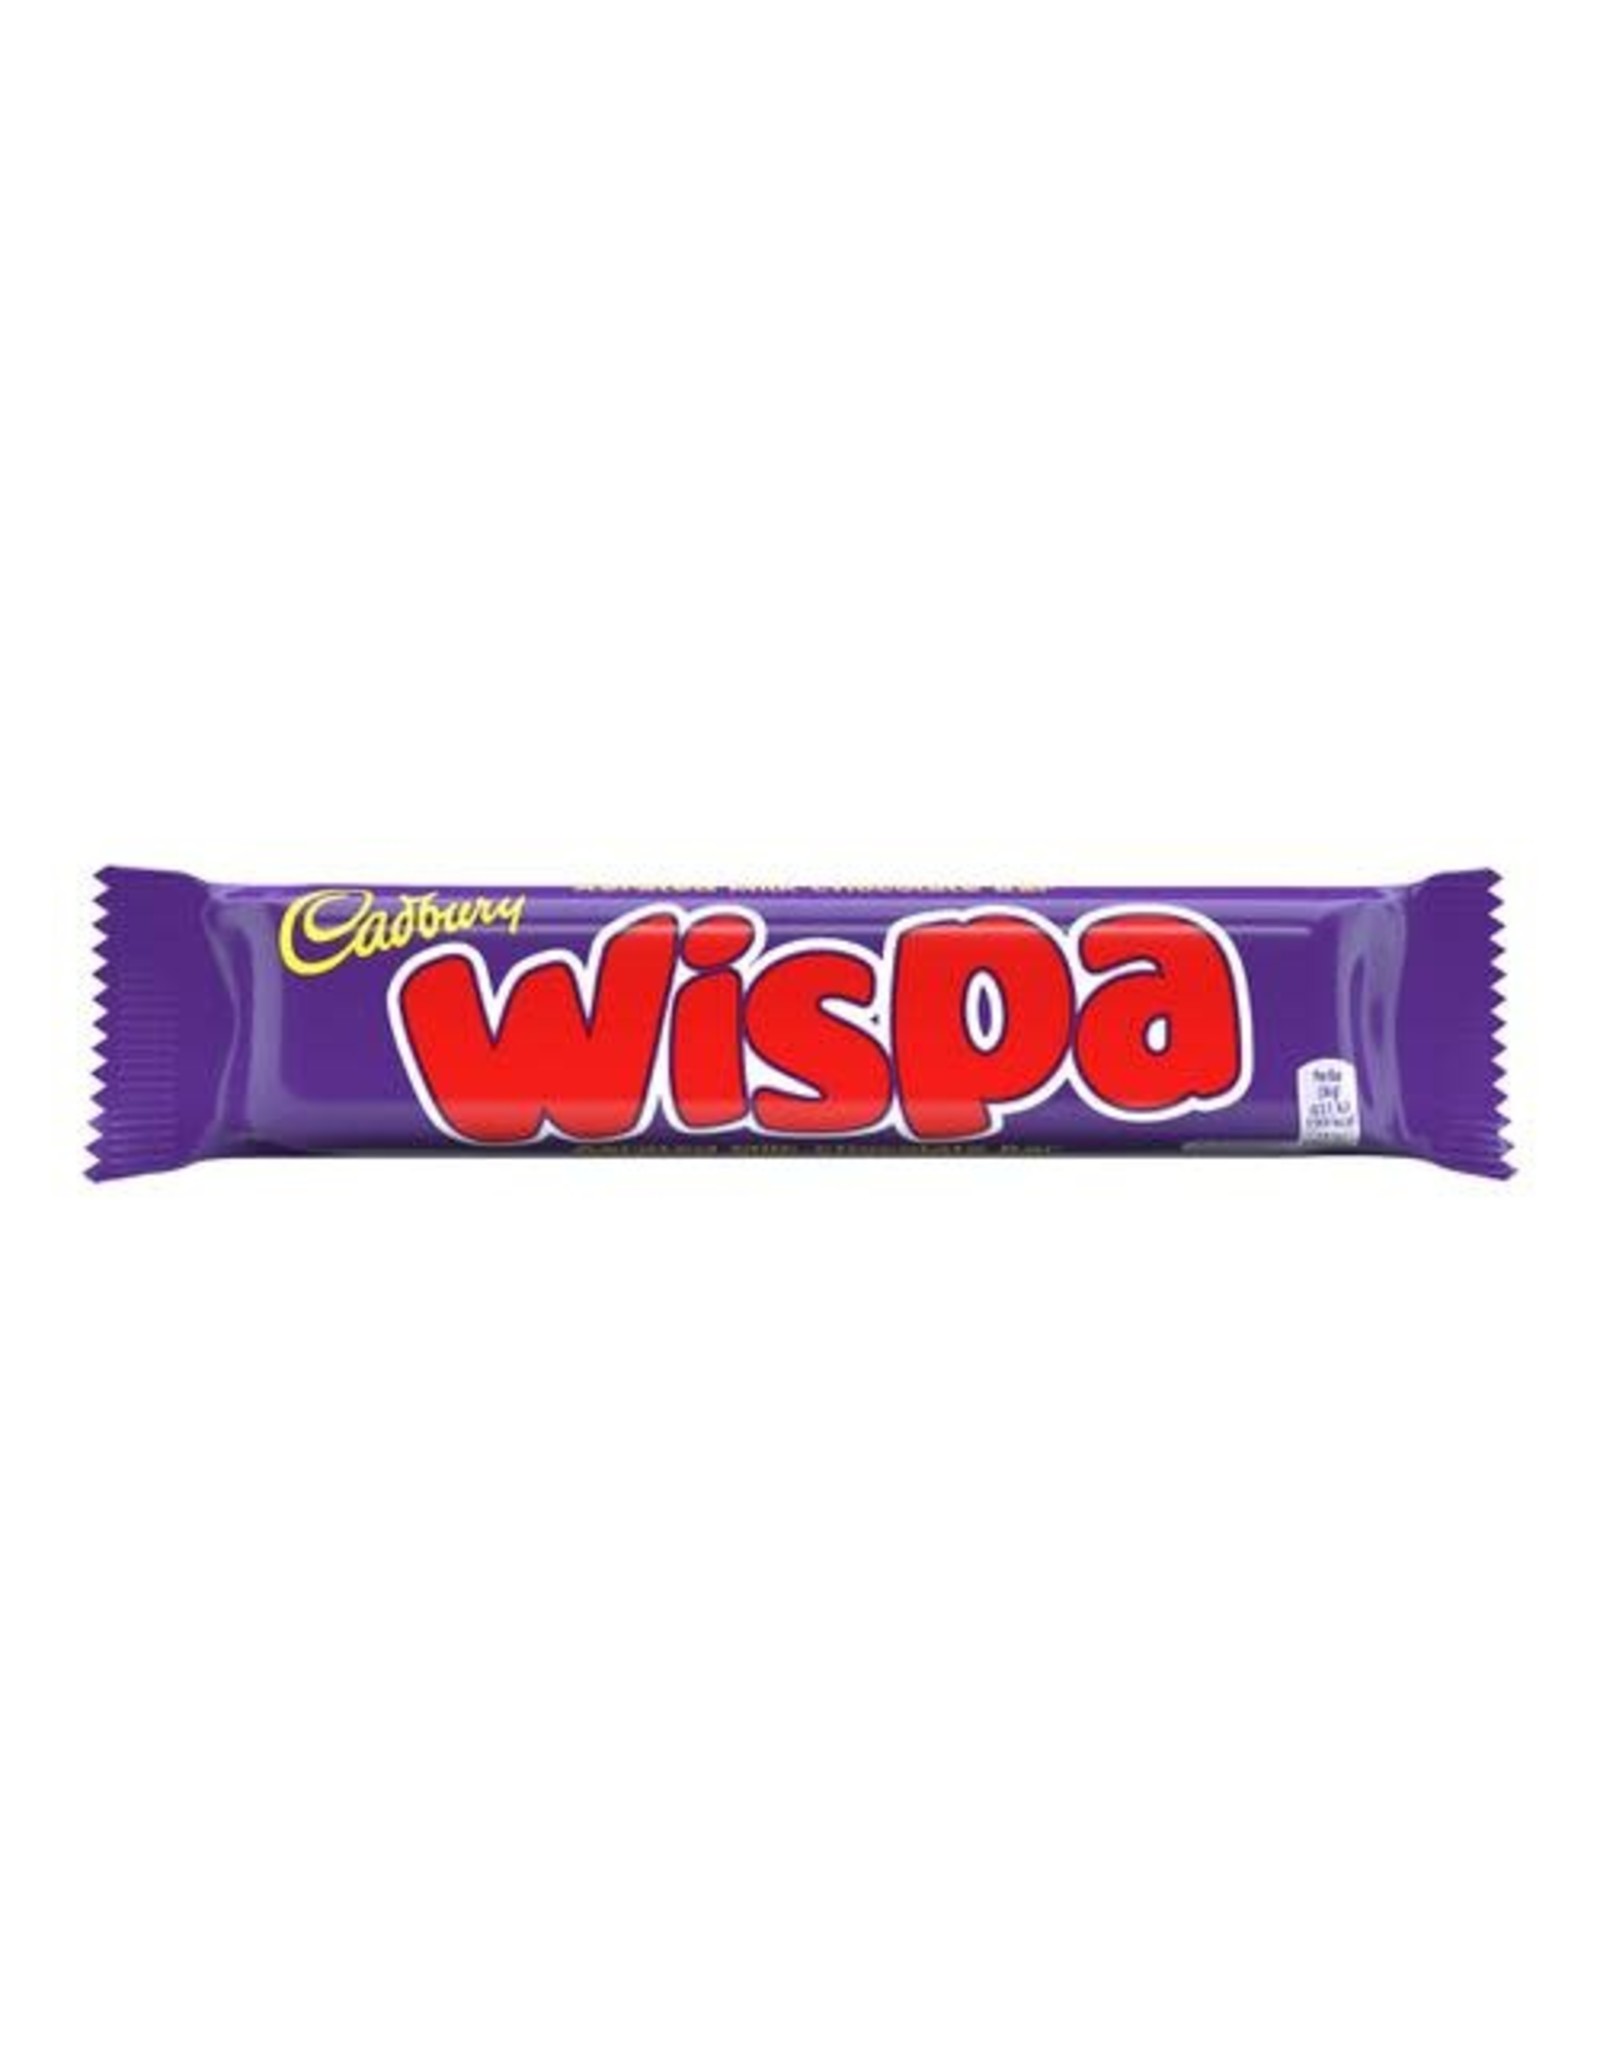 Cadbury Cadbury Wispa (British)